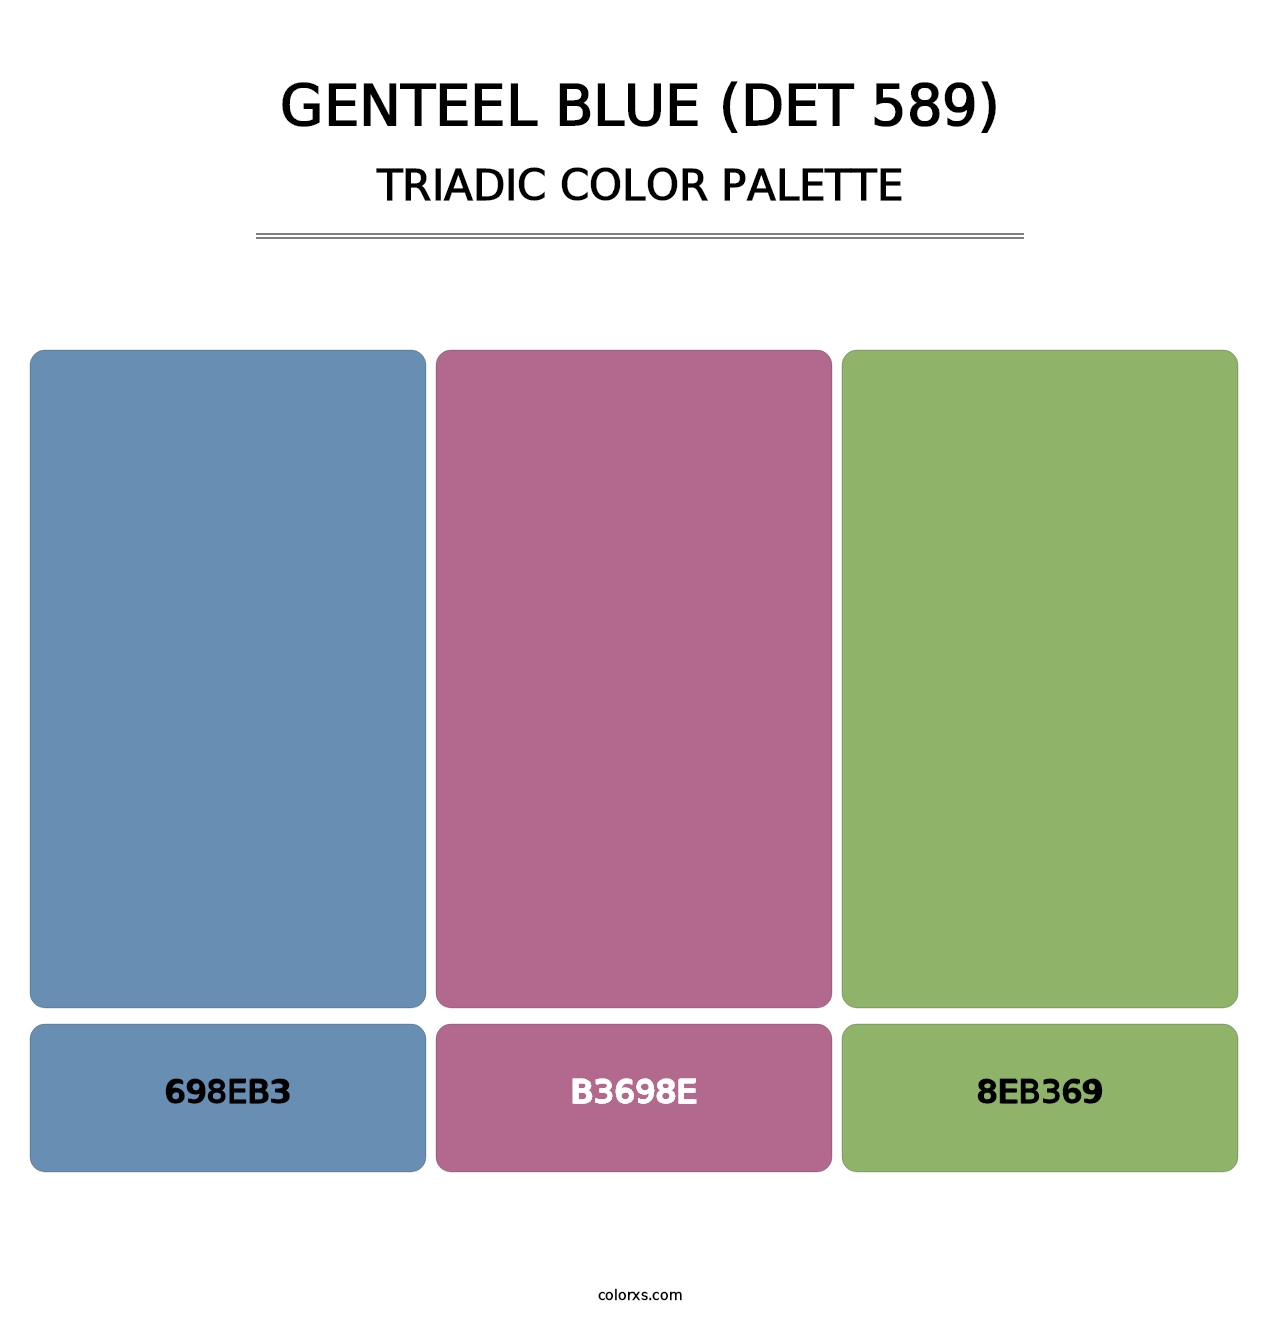 Genteel Blue (DET 589) - Triadic Color Palette